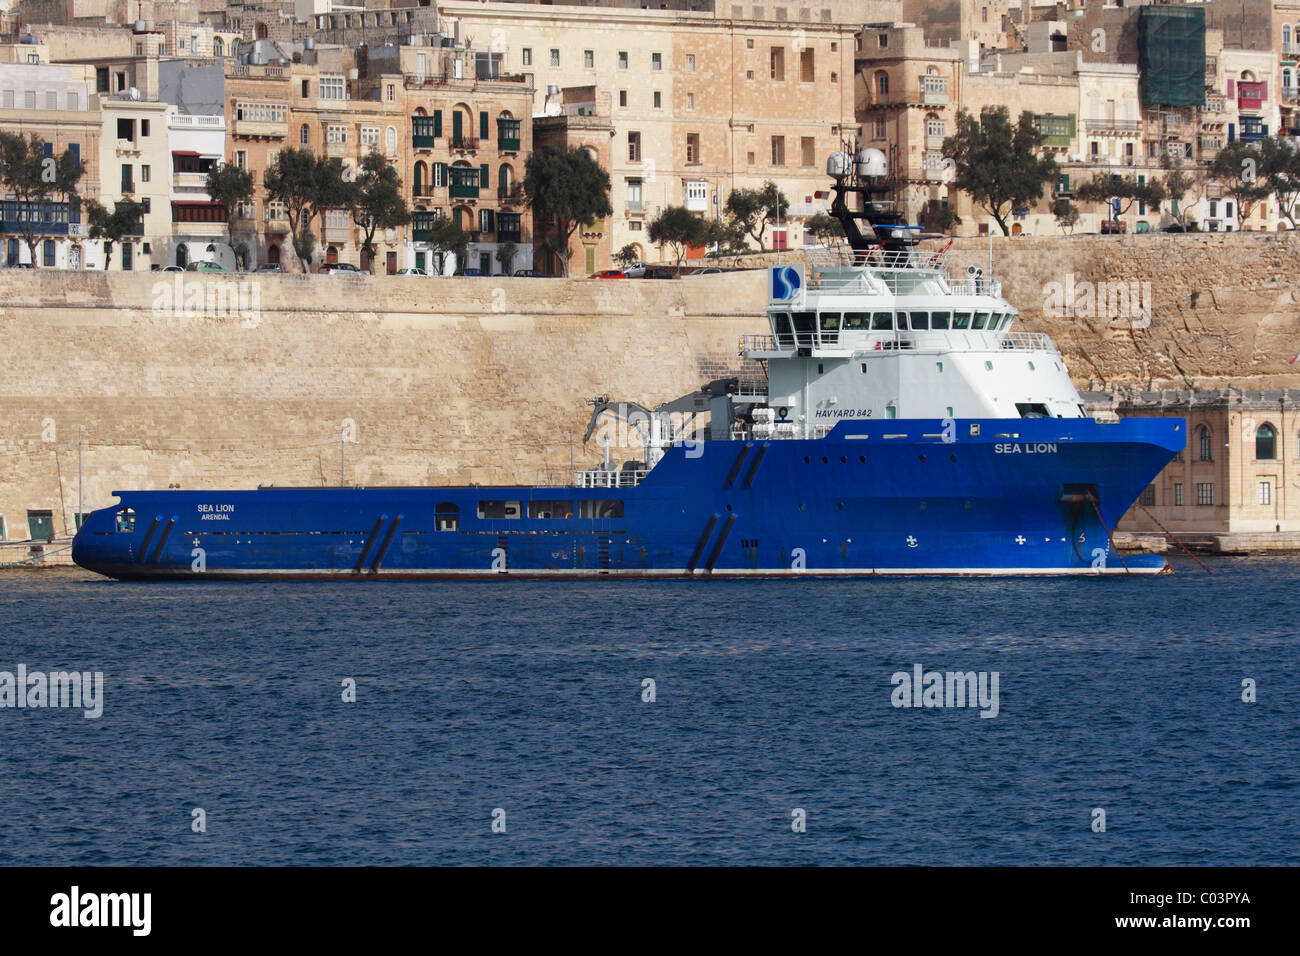 Le remorqueur Sea Lion dans le Grand Port de Malte Banque D'Images